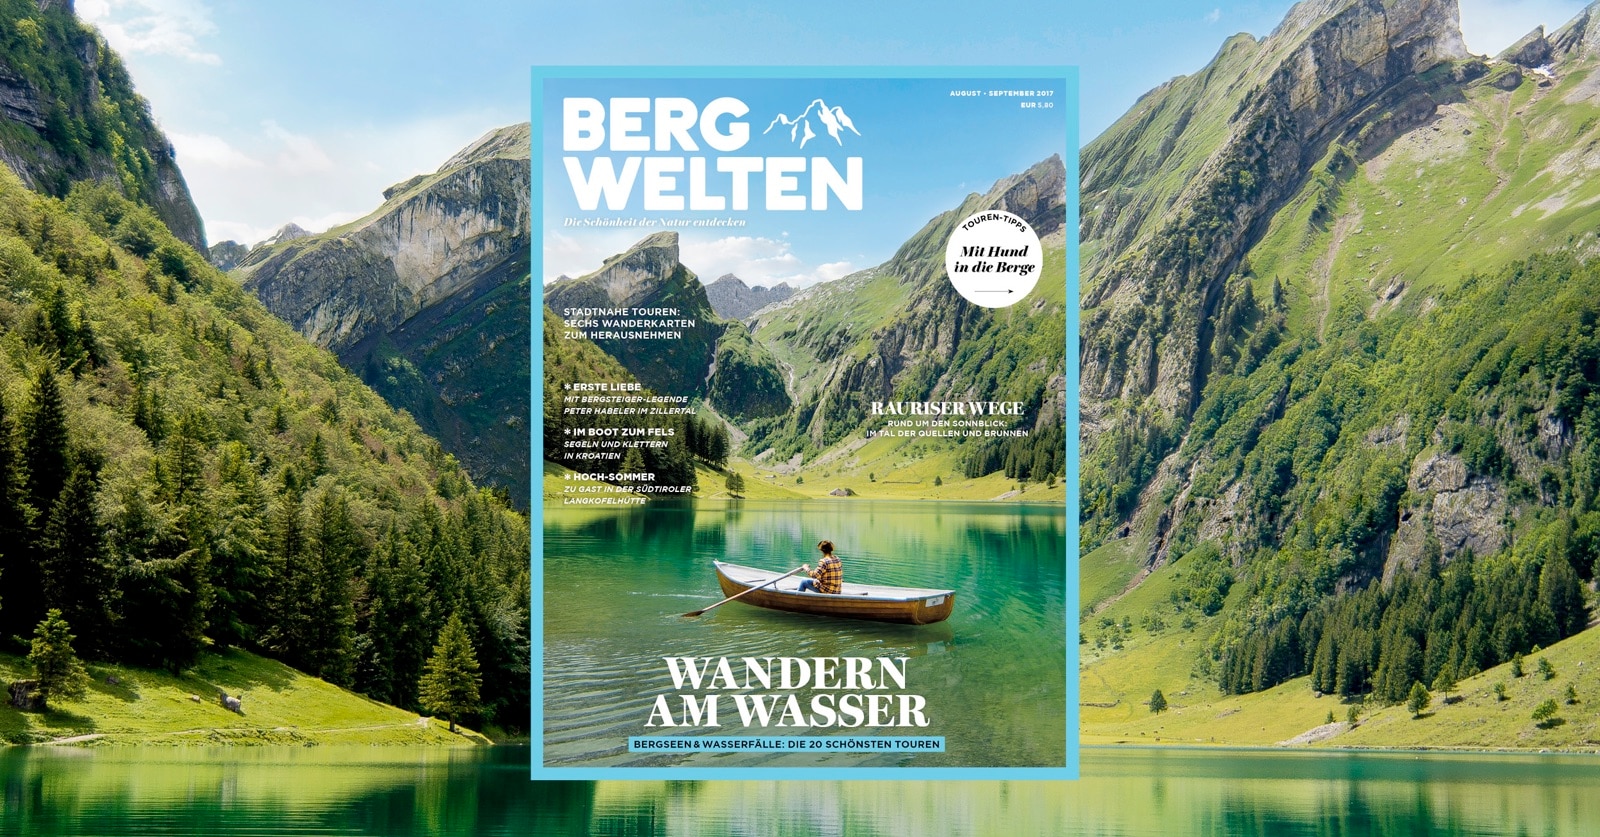 Bergwelten Magazin (August/September 2017)